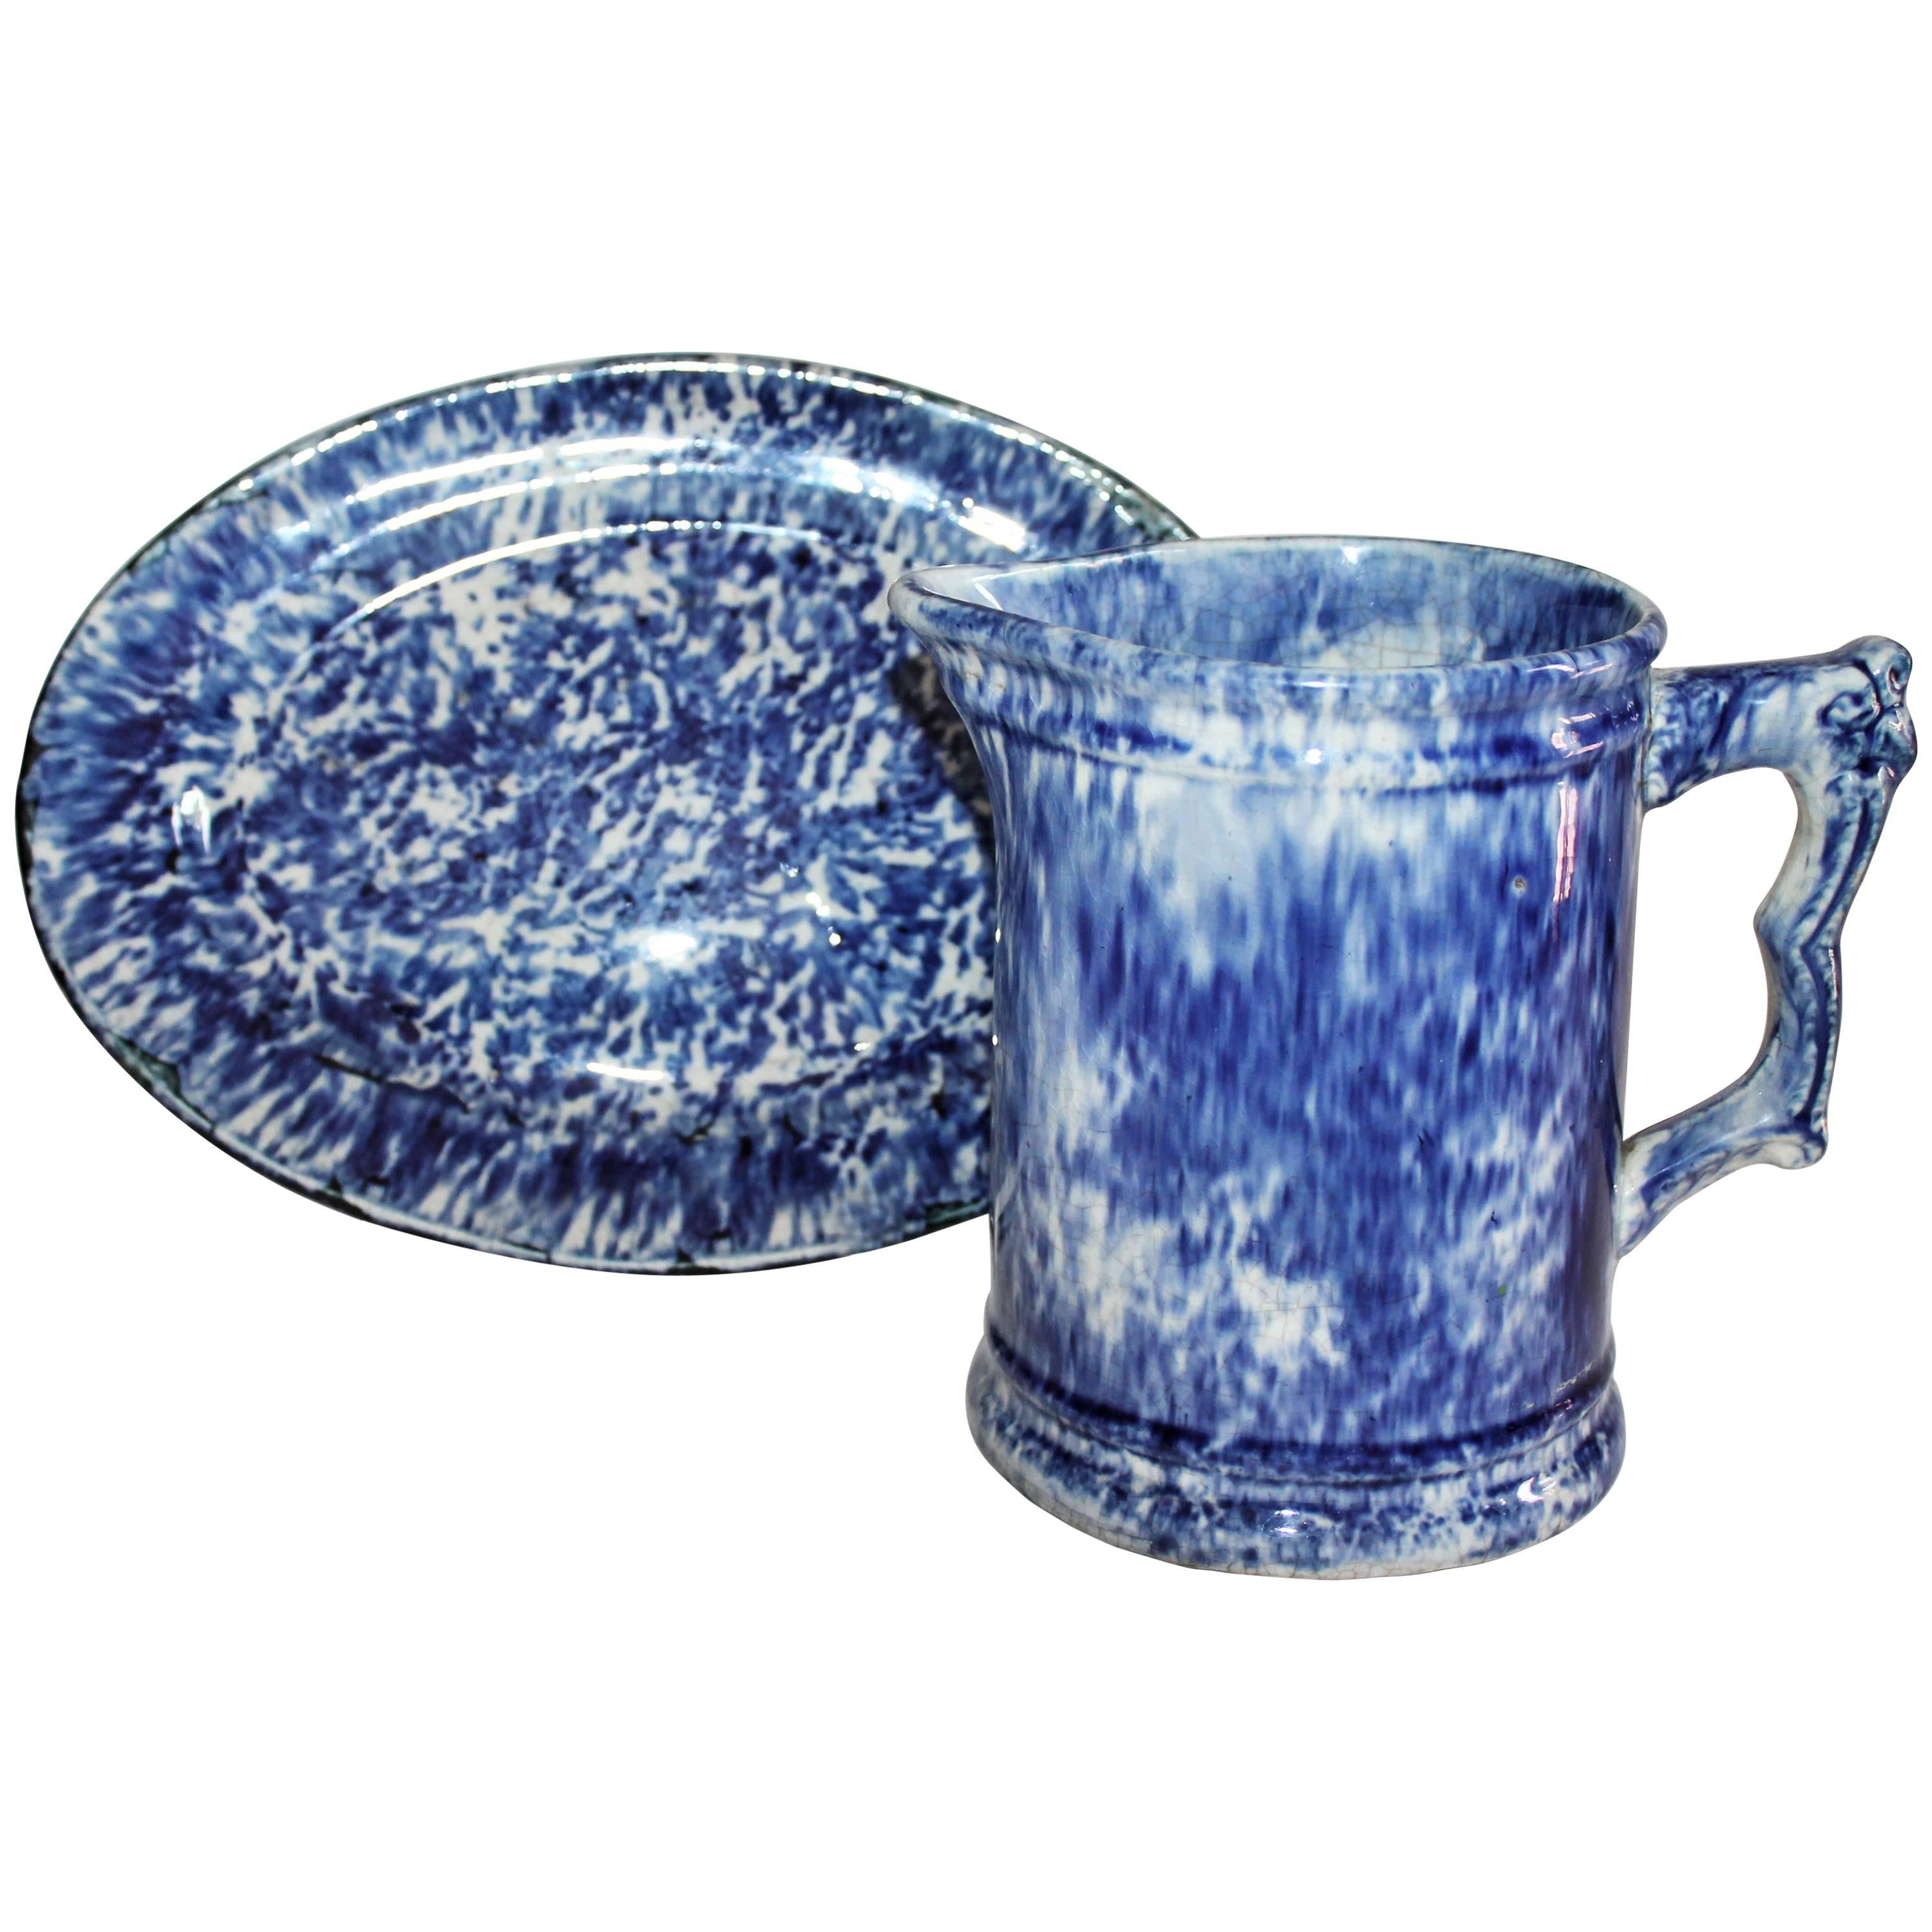 Keramikplatte und Wasserkrug aus Spongeware des 19. Jahrhunderts